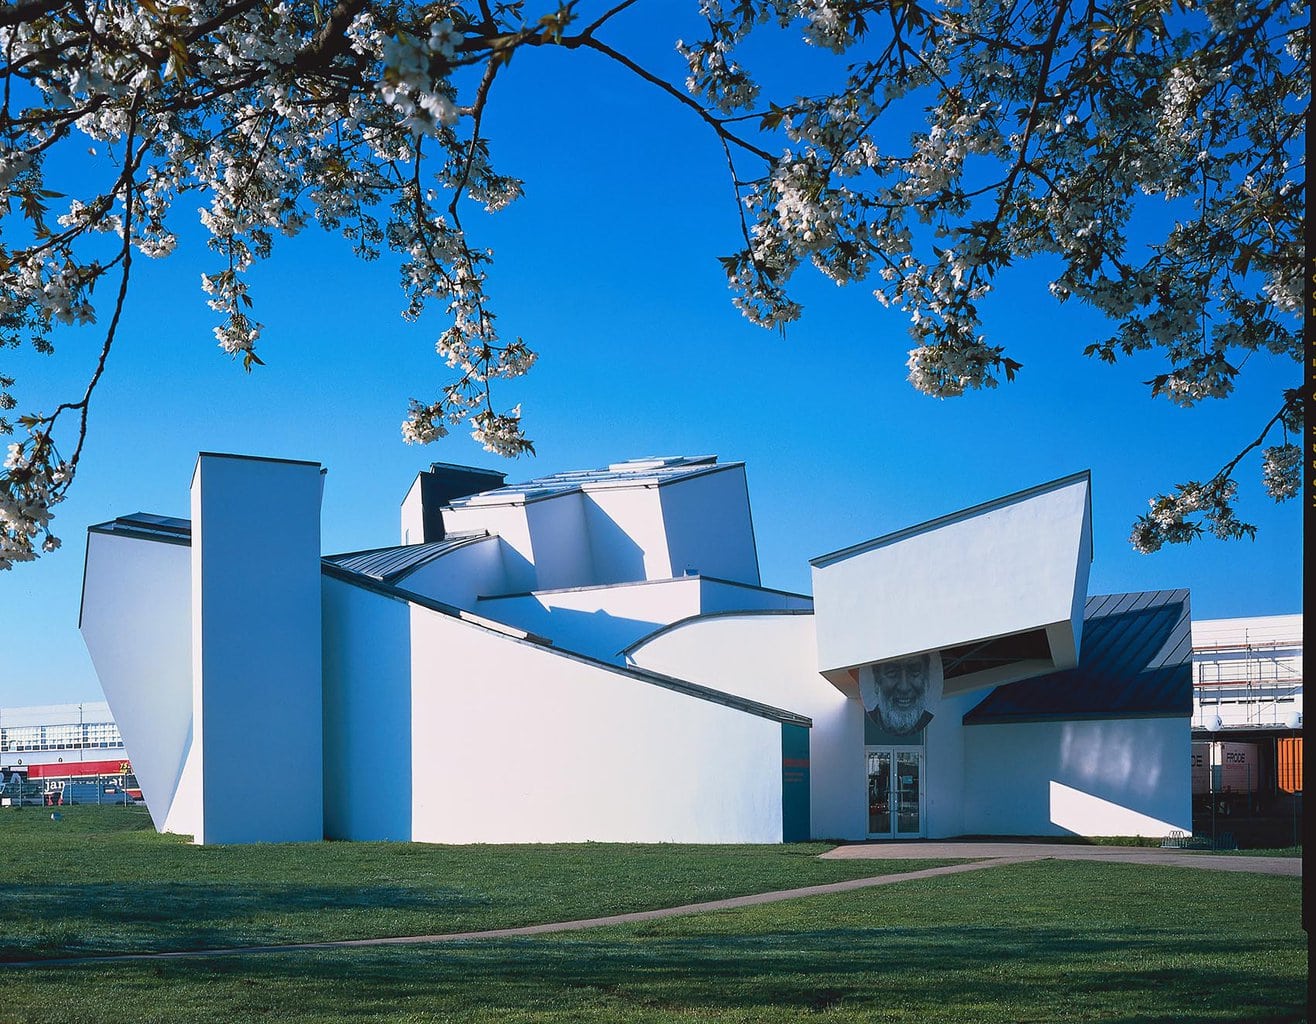 Huis ontworpen door Frank Gehry